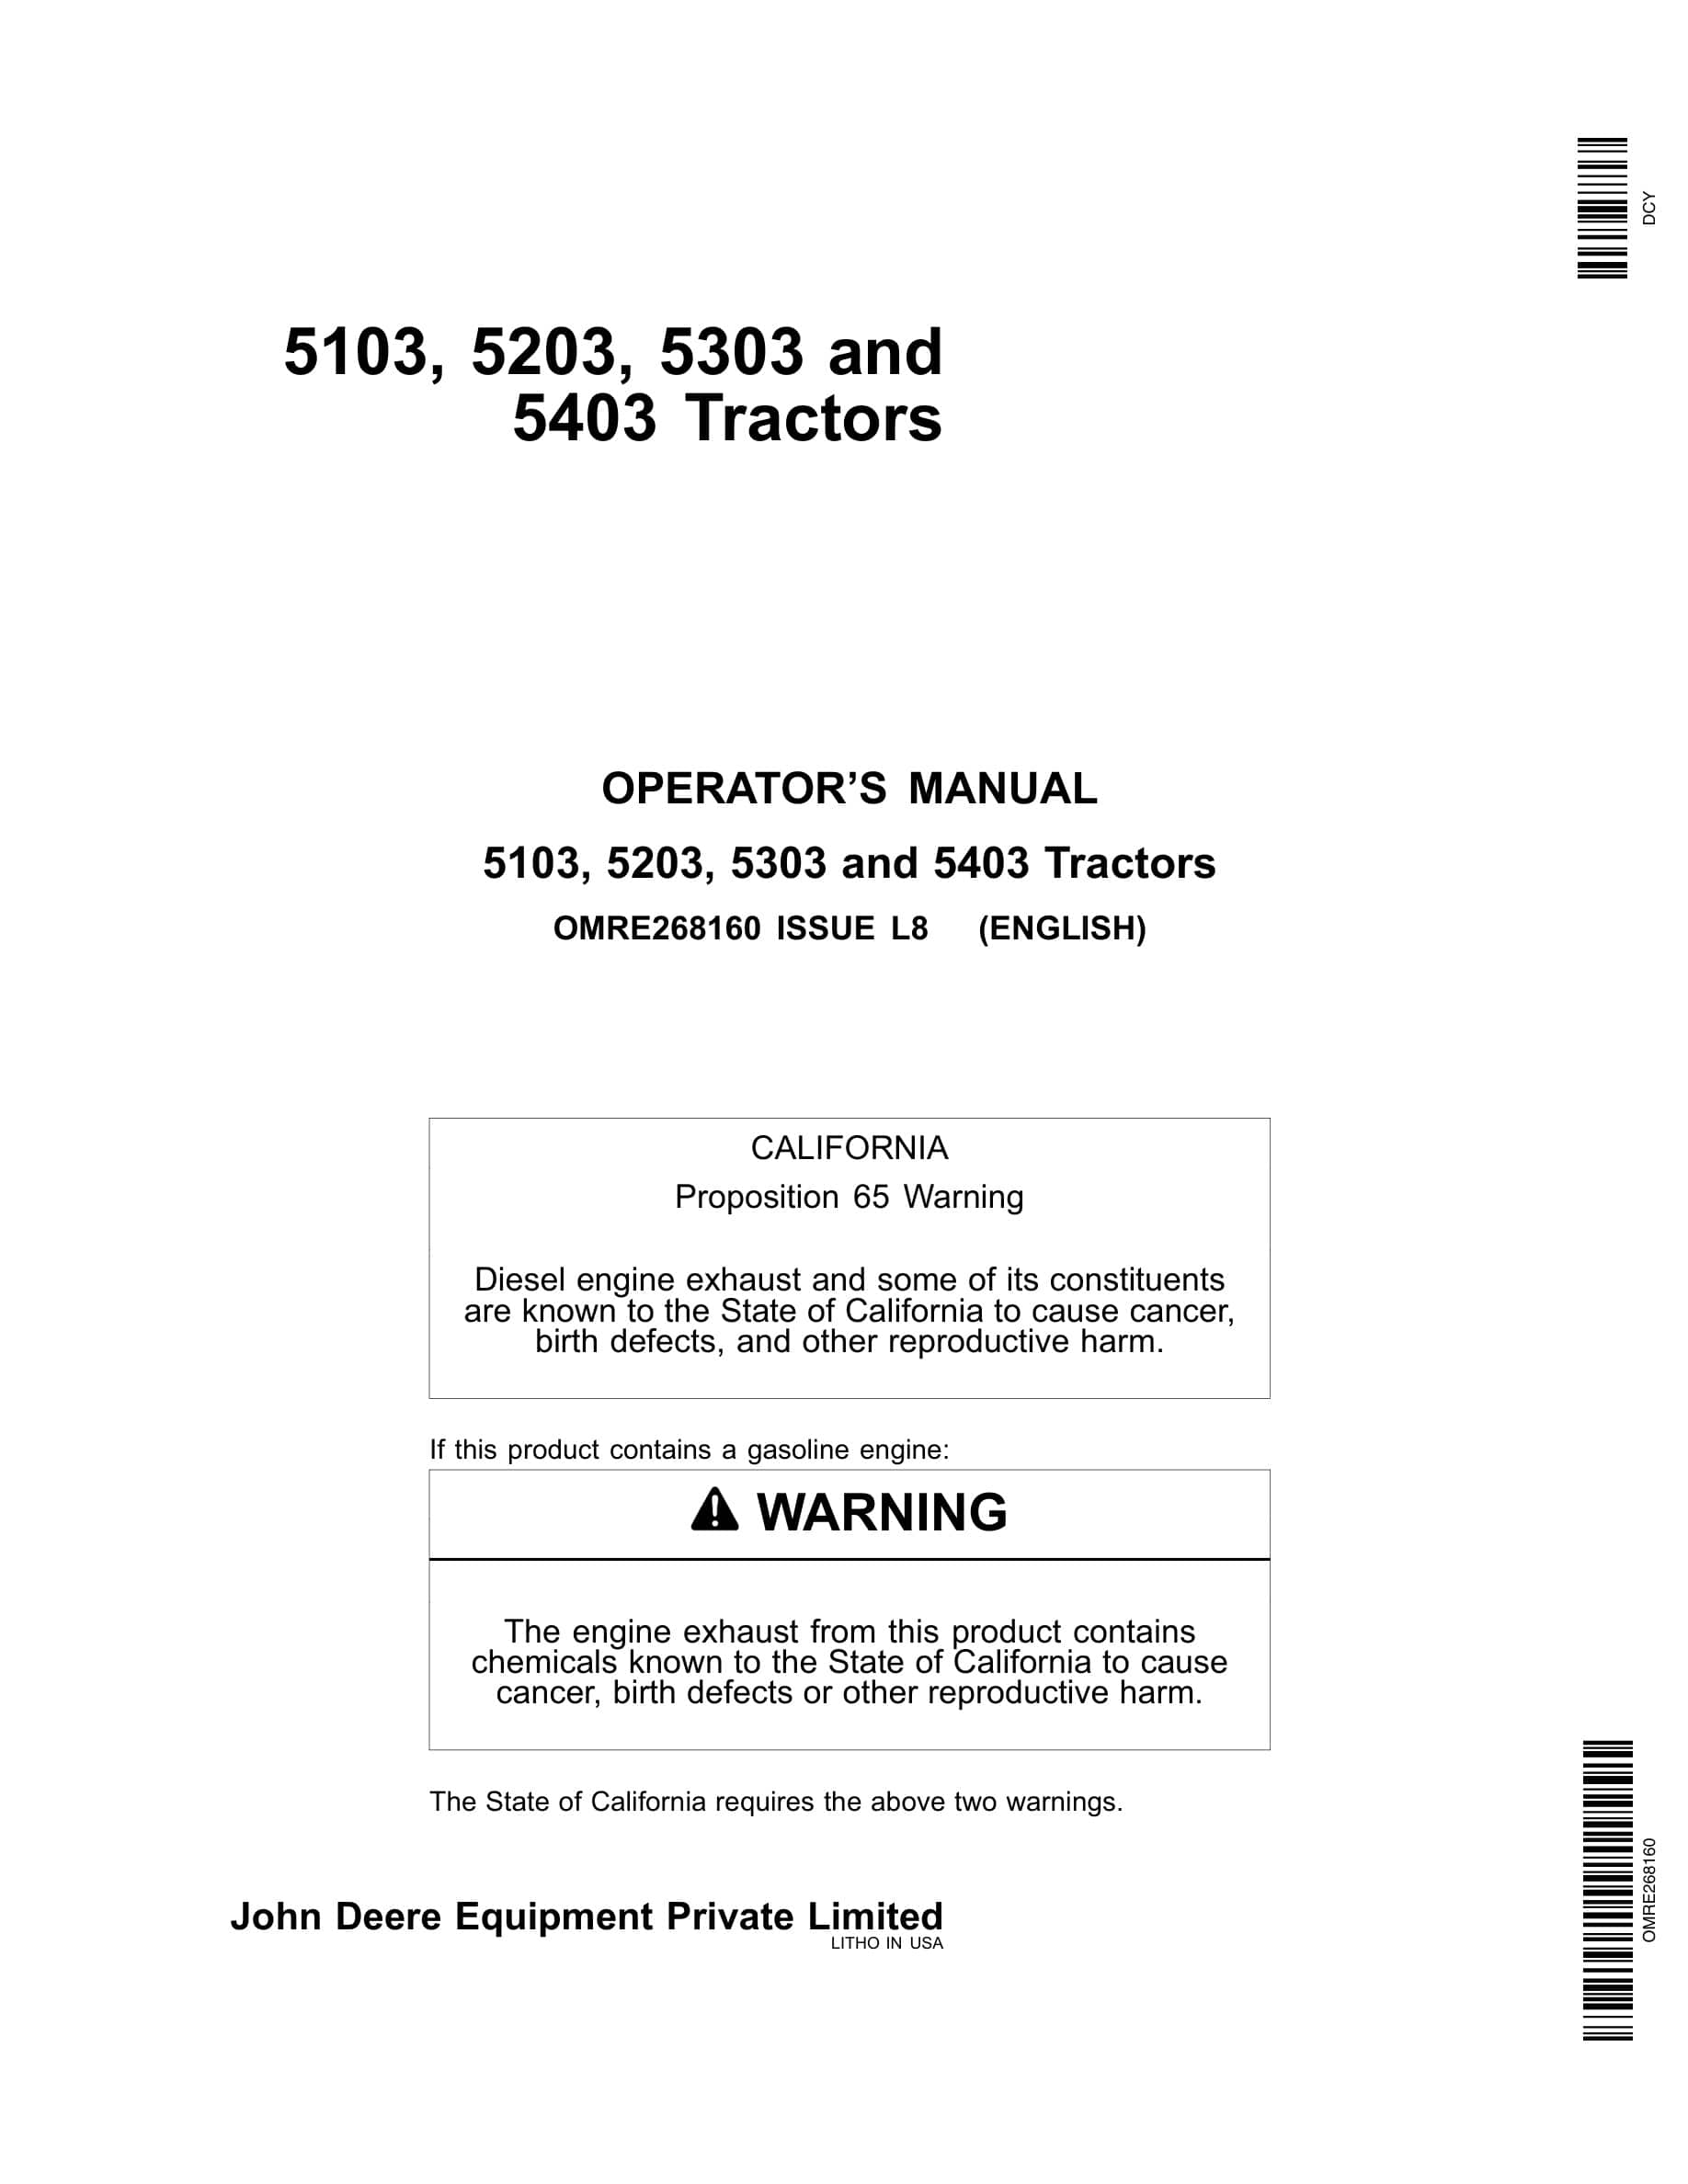 John Deere 5103 5203 5303 5403 Tractor Operator Manual OMRE268160-1